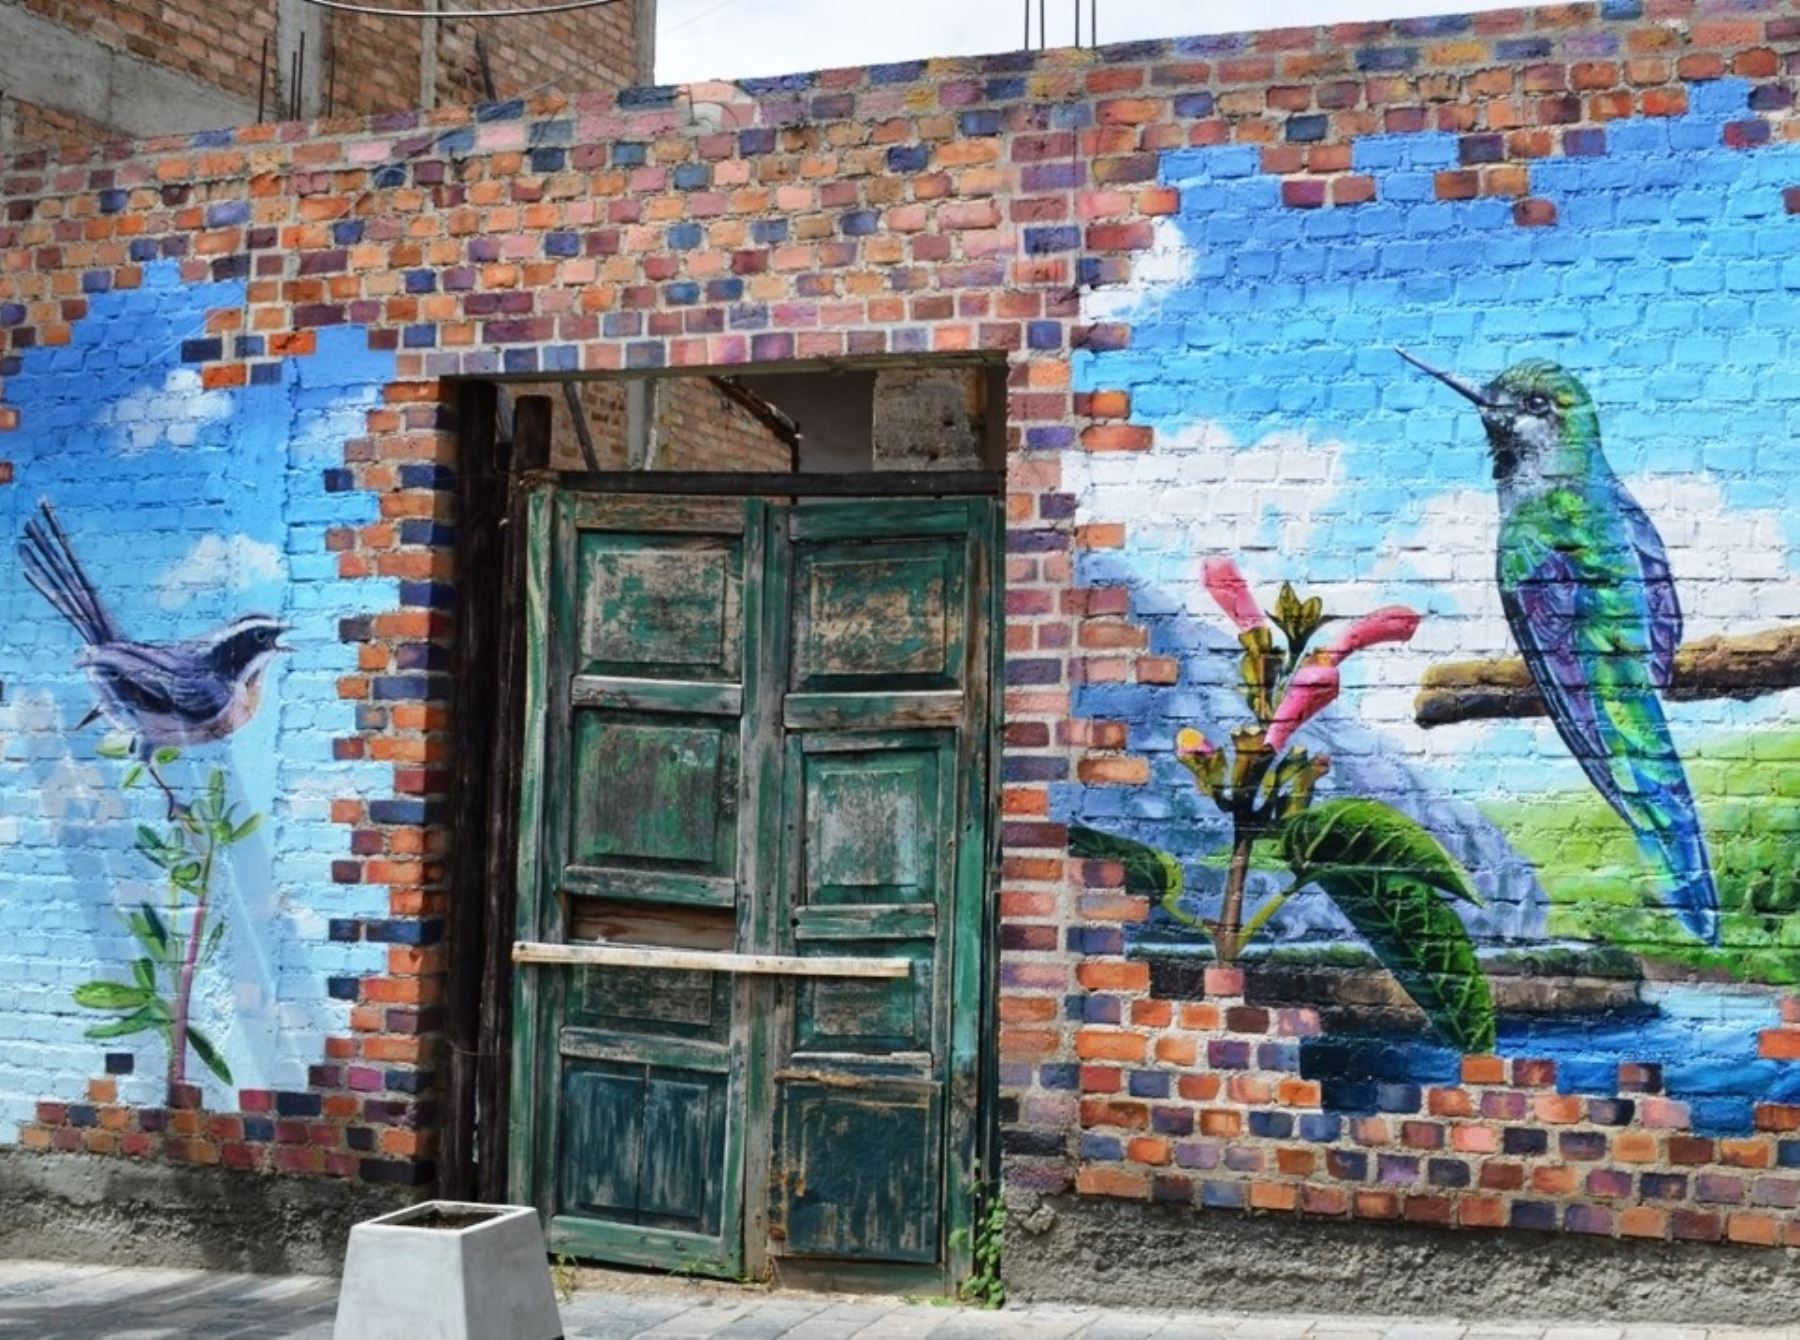 Presentan mural en la ciudad de Cajamarca que muestra aves en peligro de extinción. Foto: Eduard Lozano